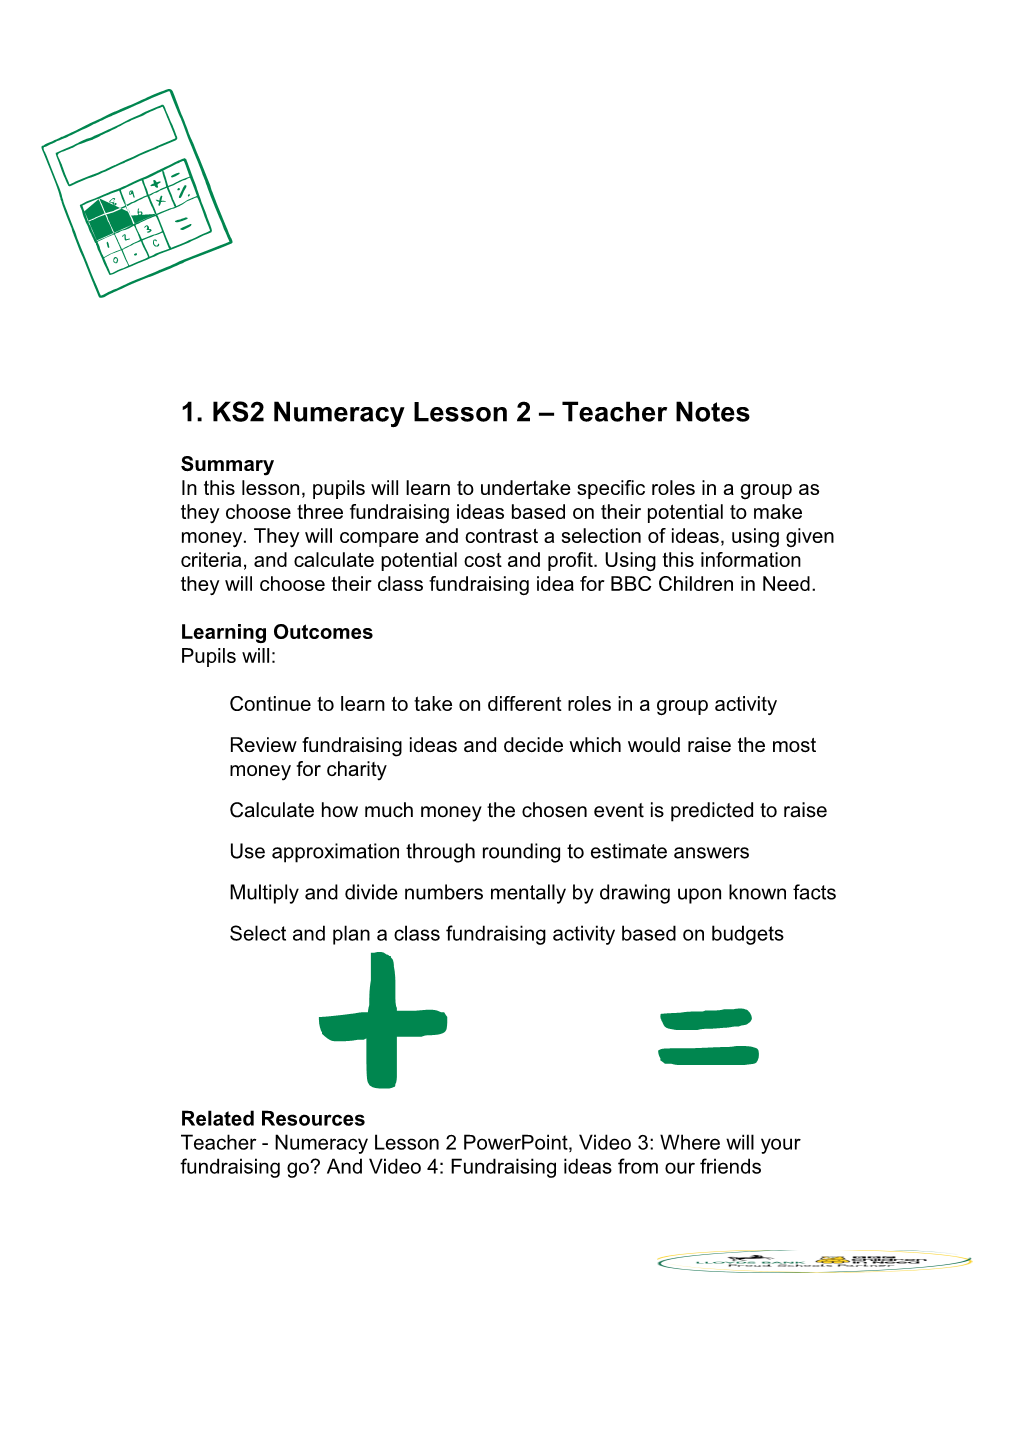 KS2 Numeracy Lesson 2 Teacher Notes